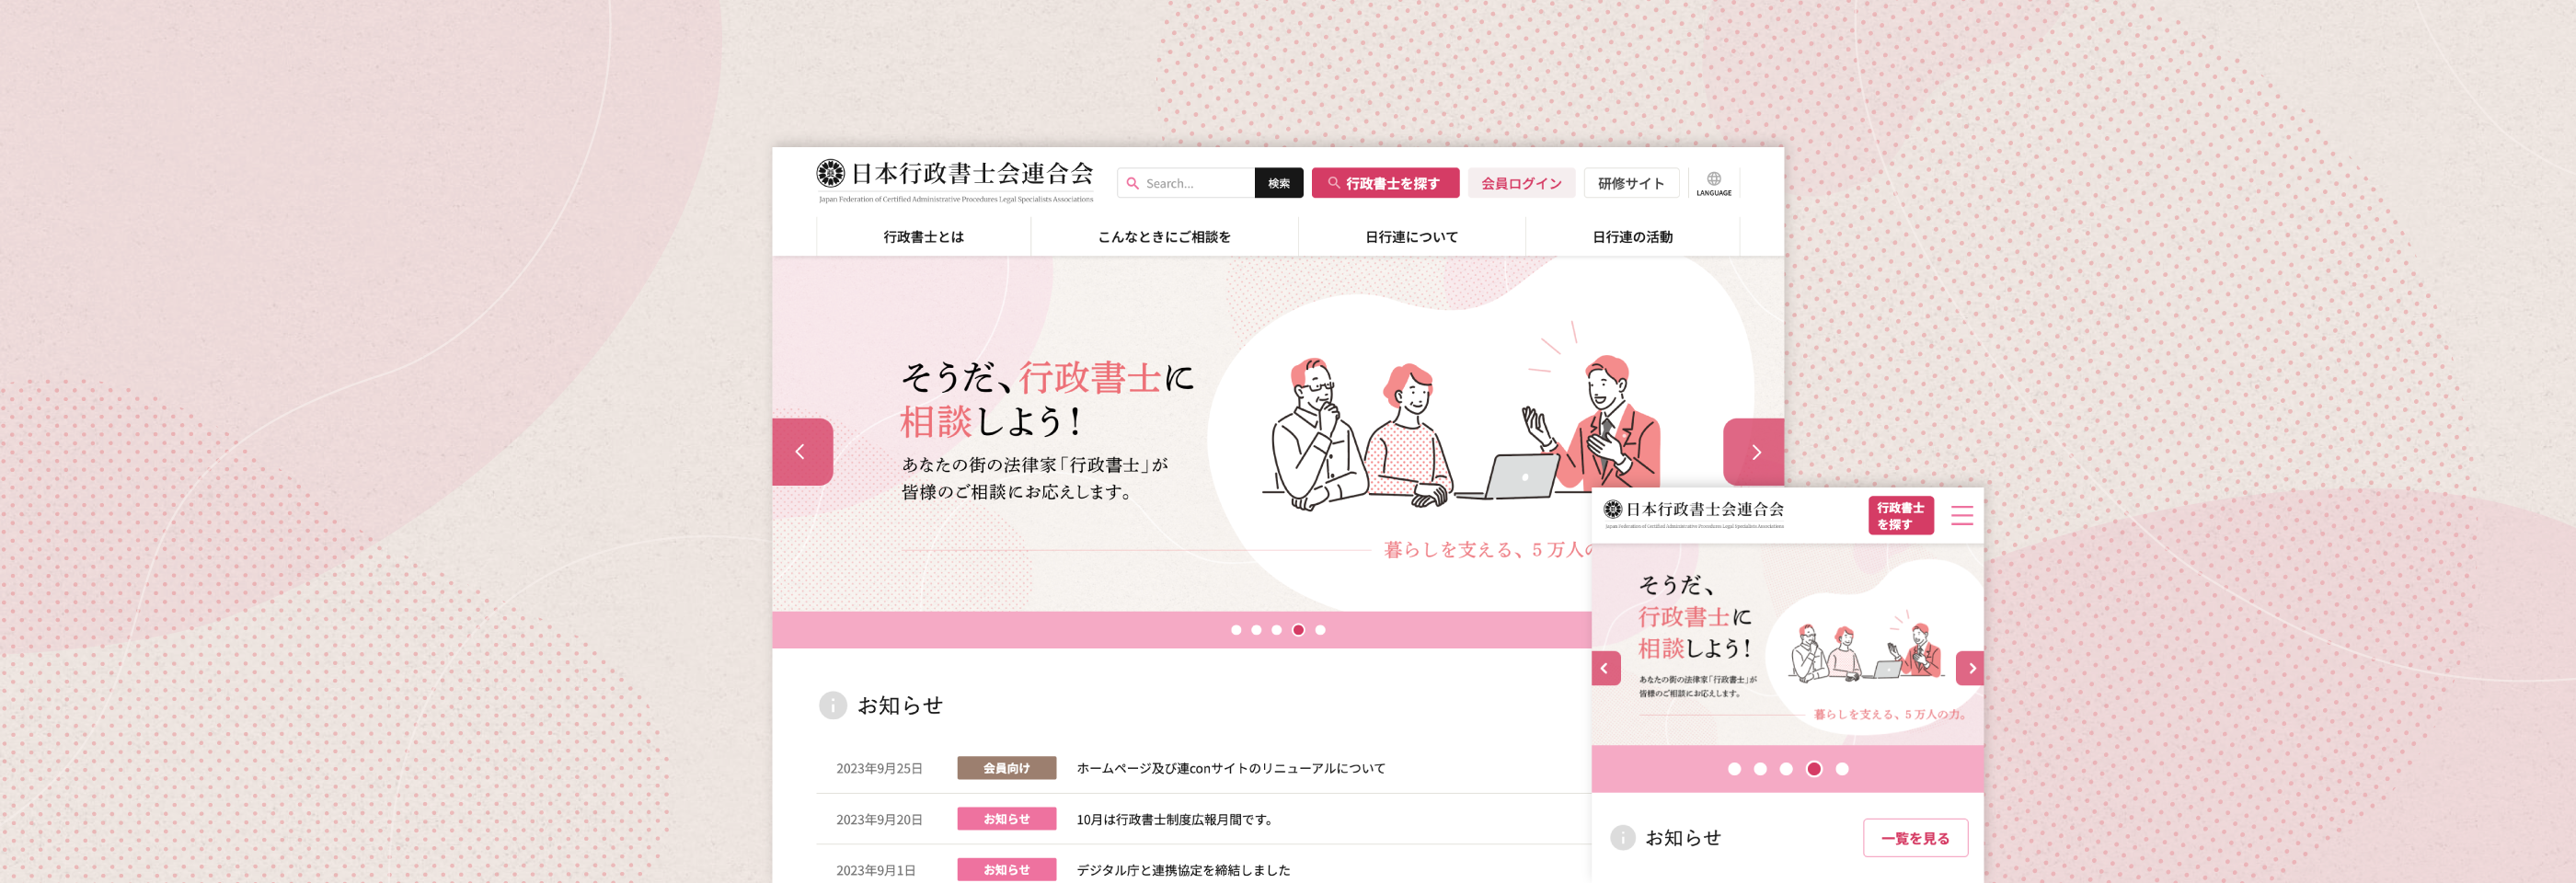 日本行政書士会連合会 公式ウェブサイト イメージ画像